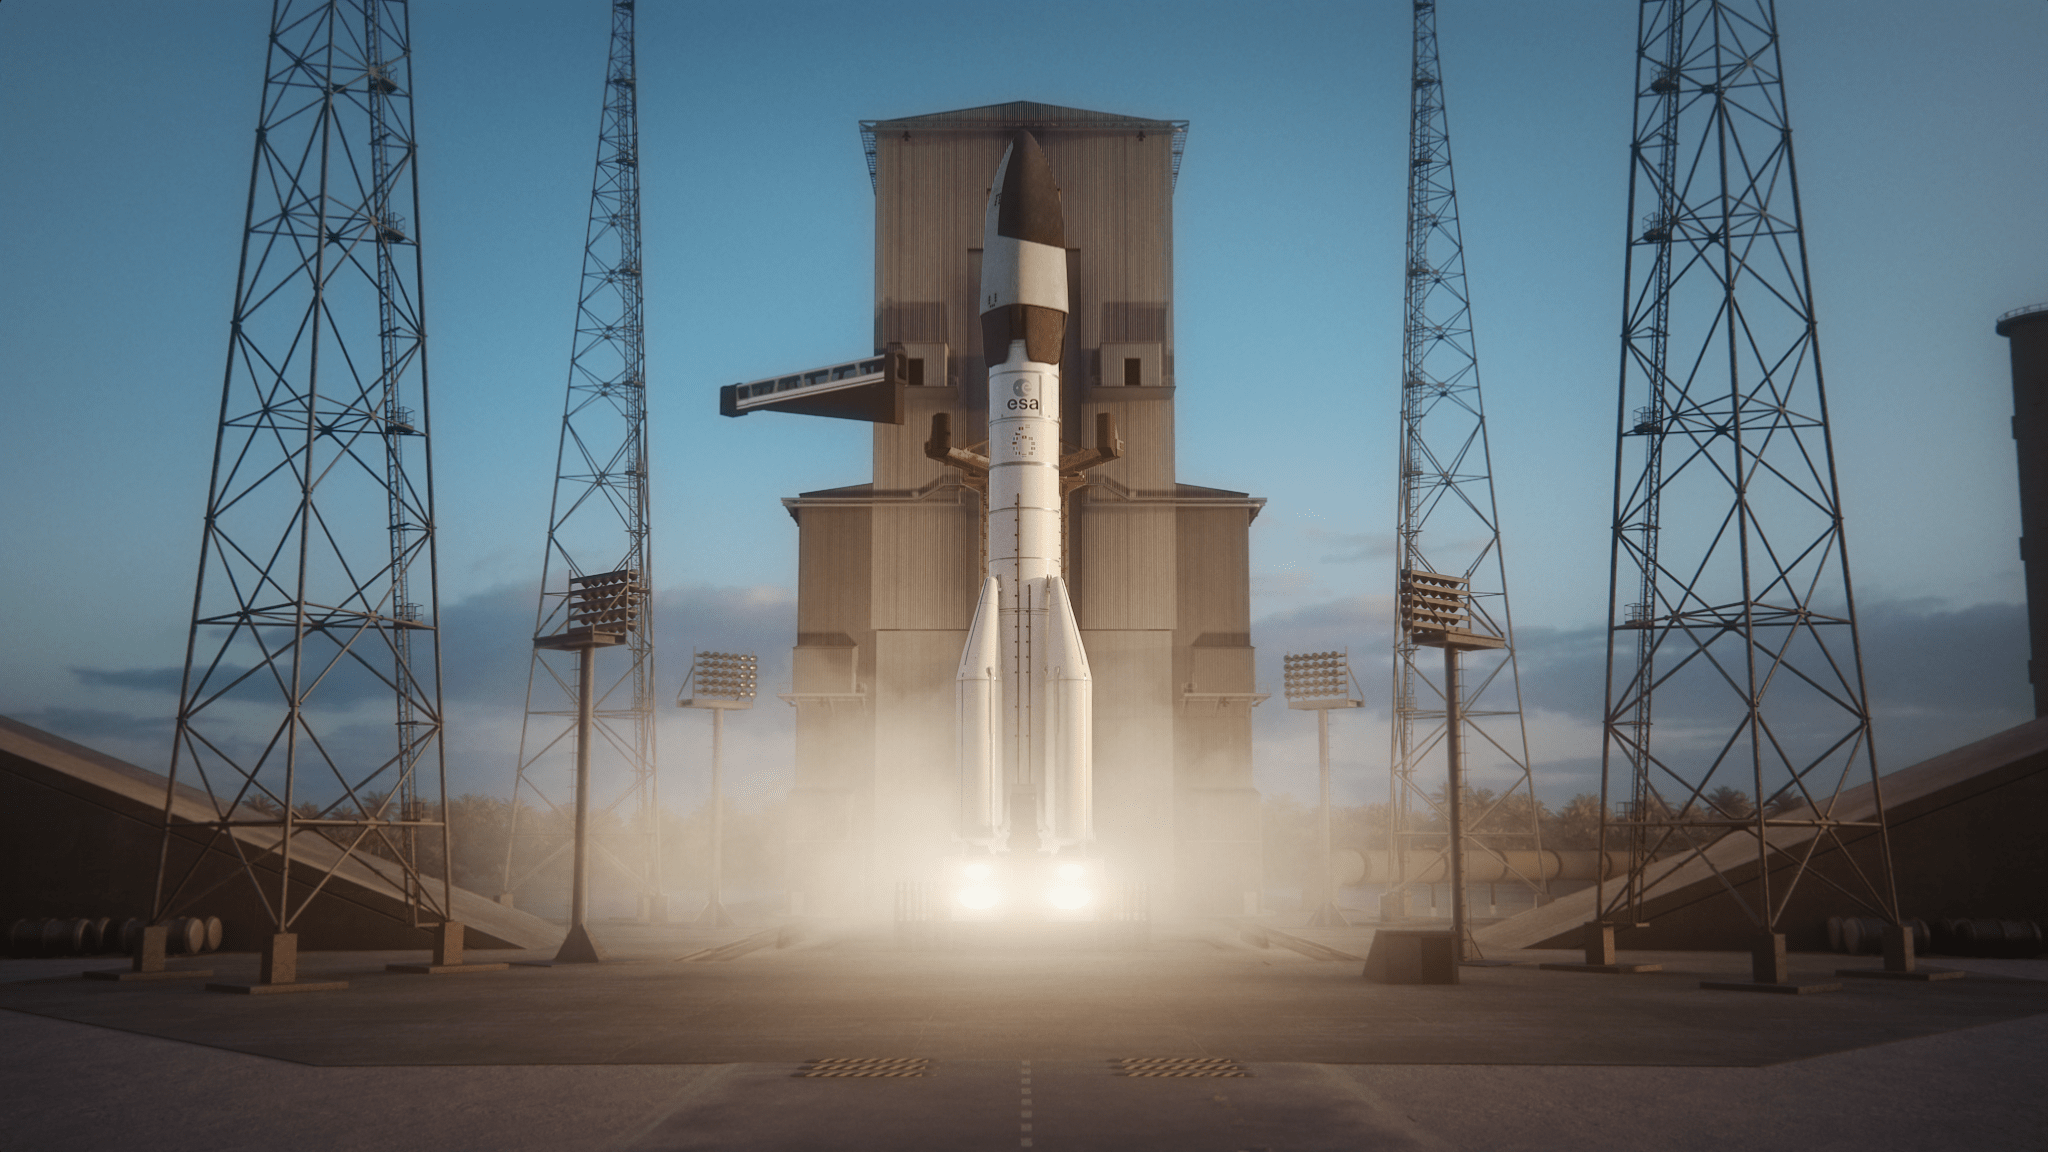 Un render dell'Ariane 64 mentre lancia SUSIE. La rampa è visibilmente modificata per permettere l'accesso agli astronauti. Credits: ArianeSpace